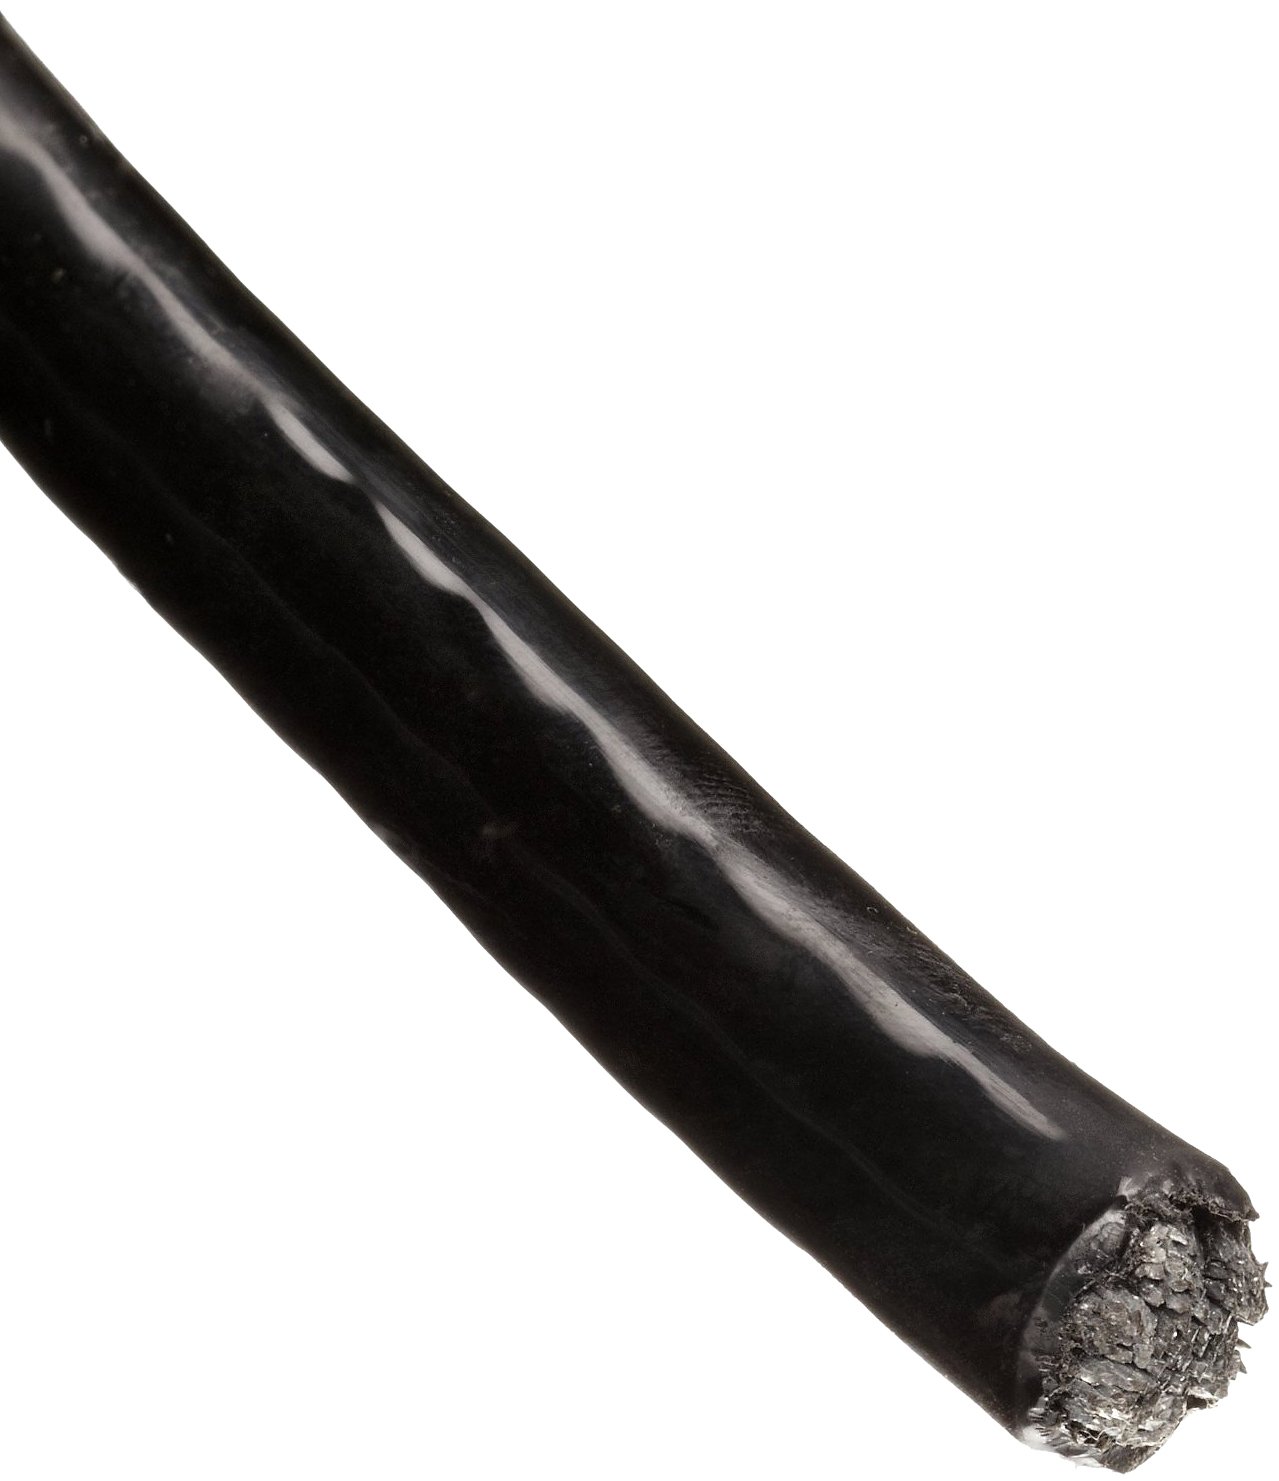 Трос в ПВХ оболочке 4,5 мм непрозрачный черный - фото